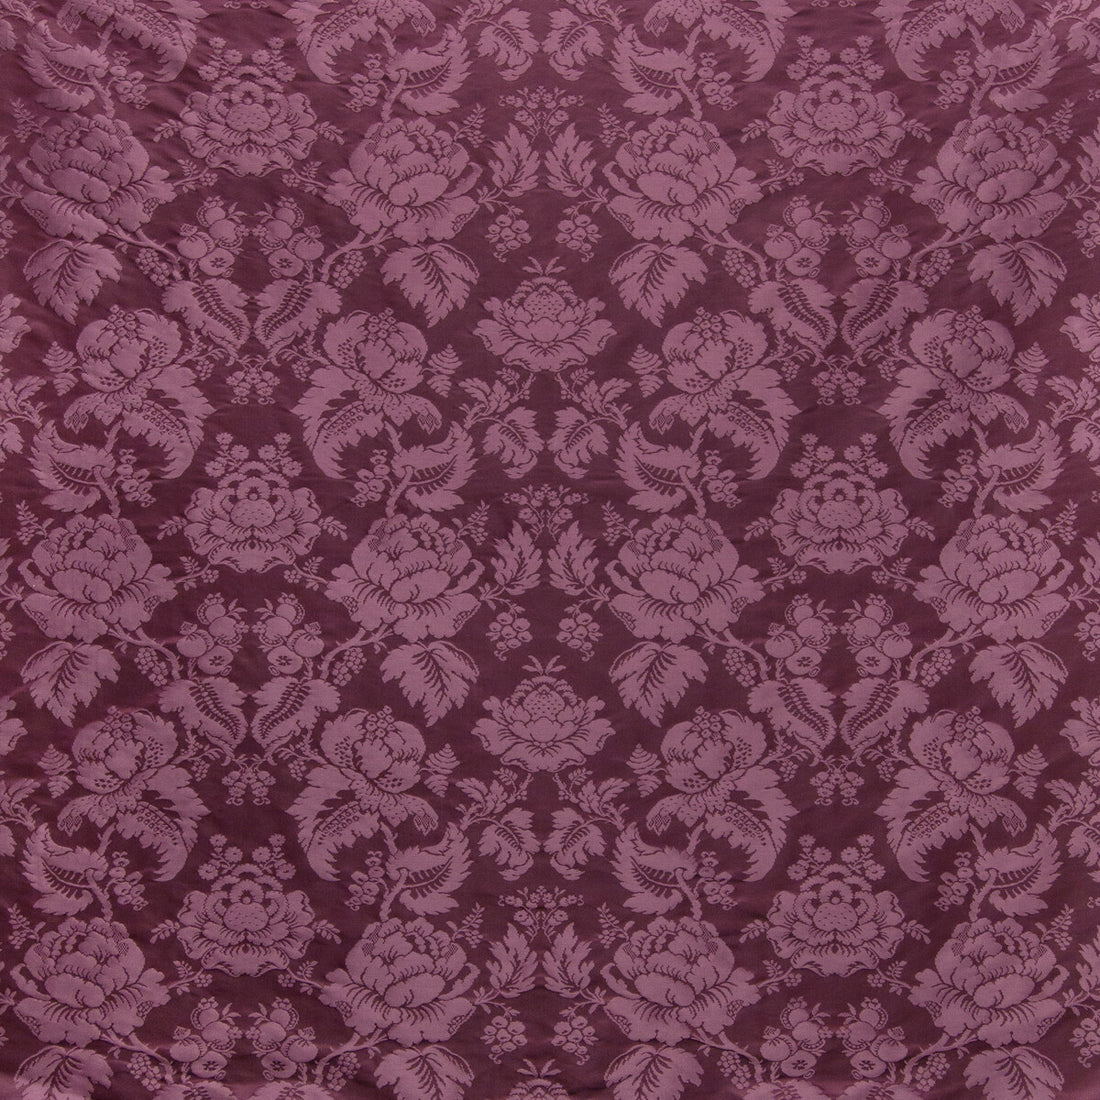 Moulins Damask fabric in eggplant color - pattern BR-81035.909.0 - by Brunschwig &amp; Fils